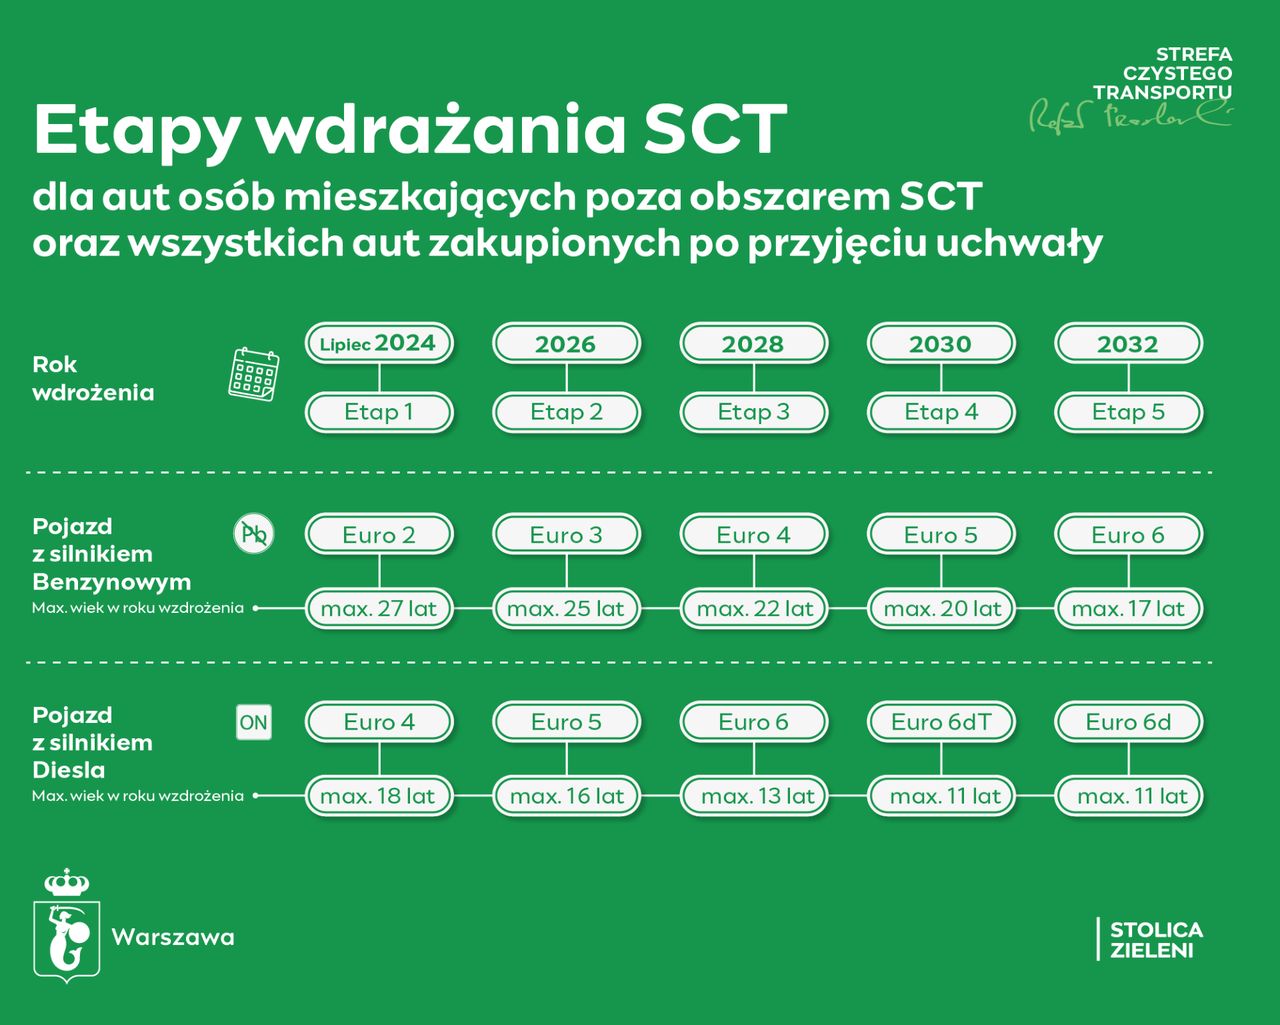 Zasady obowiązywania SCT w Warszawie